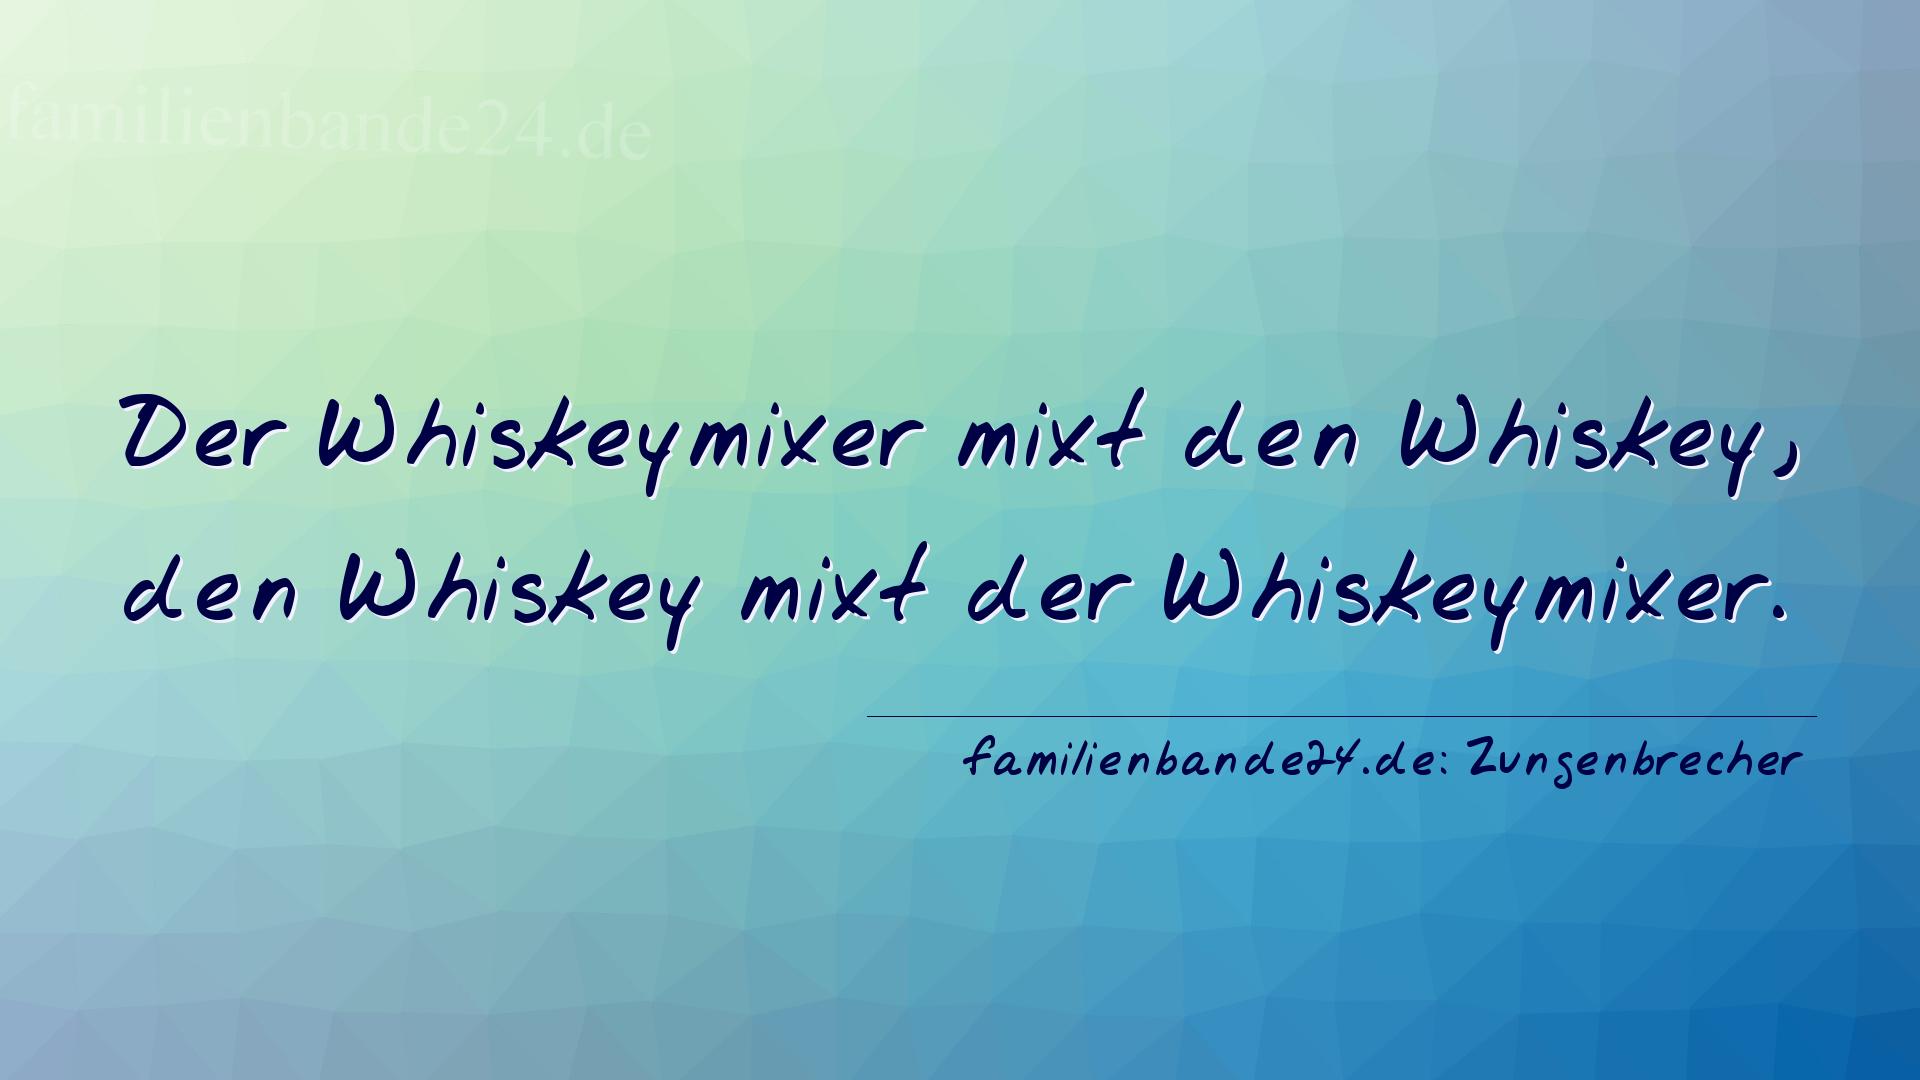 Zungenbrecher Nummer 2006: Der Whiskeymixer mixt den Whiskey,
den Whiskey mixt der W [...]